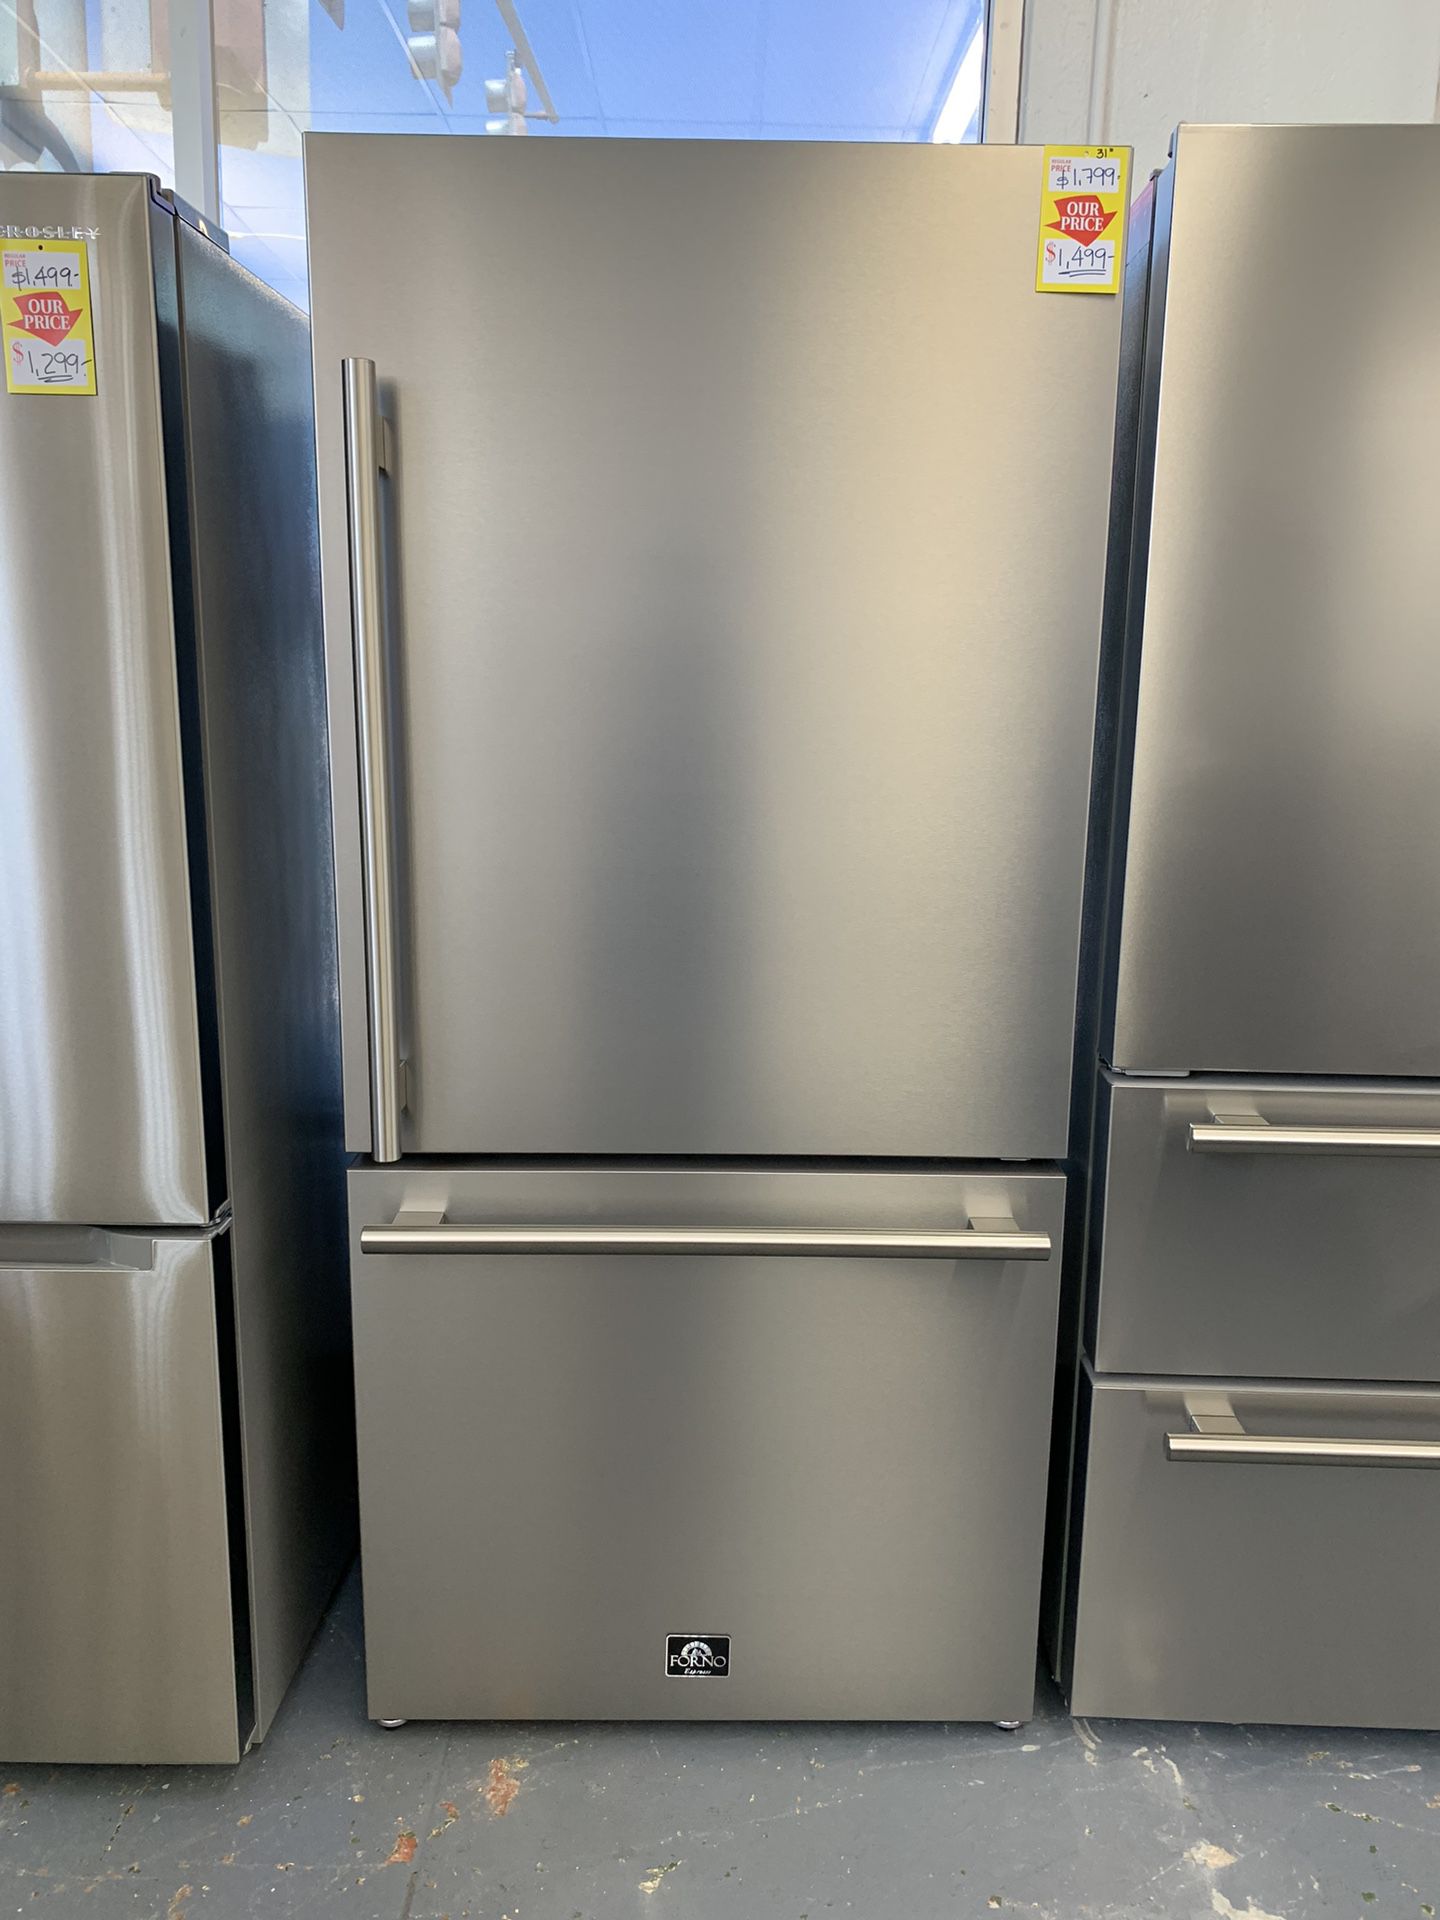 Forno 17.2 cu. ft. Refrigerator   $ 1,499.00